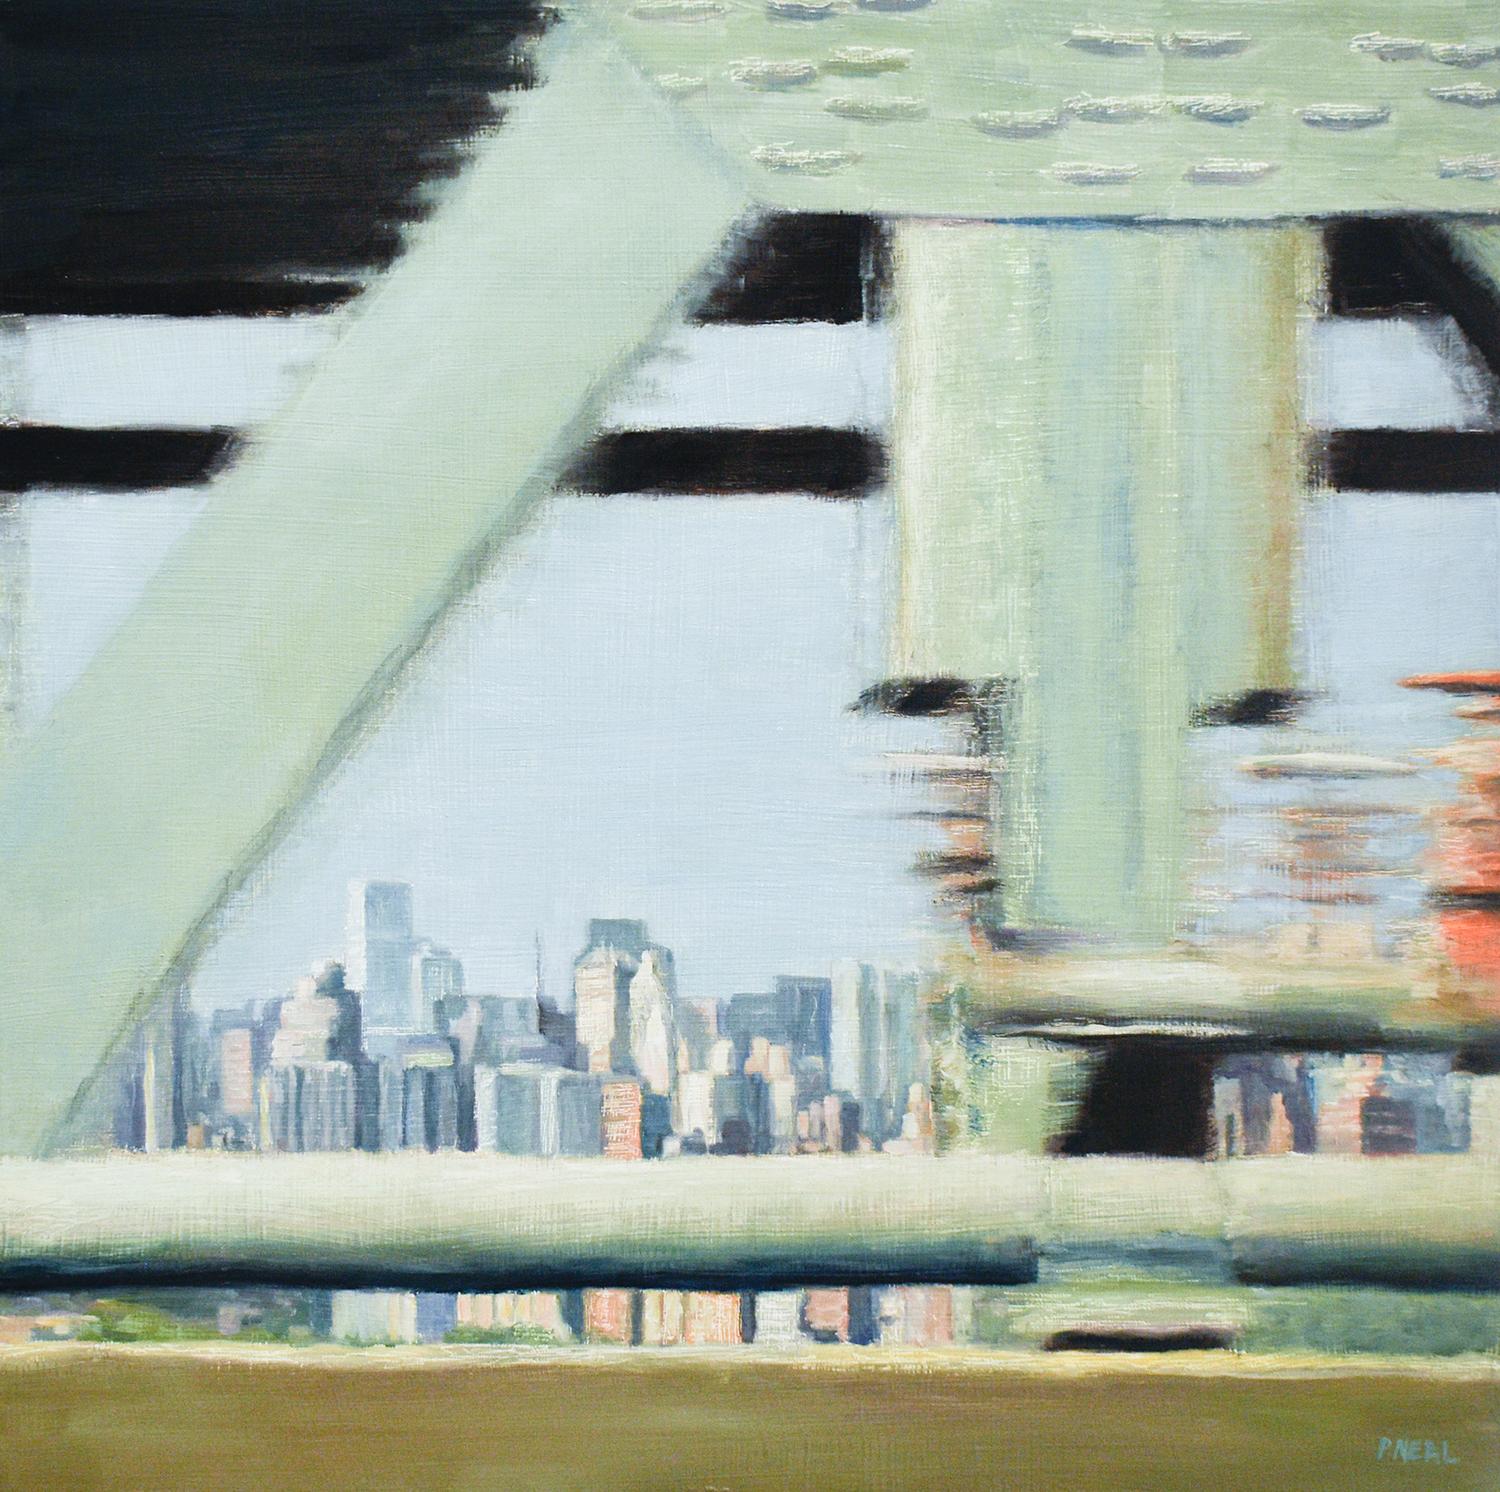 Still-Life Painting Patty Neal - City Glow : Peinture à l'huile de paysage urbain de la ville de New York dans une palette de couleurs pastel